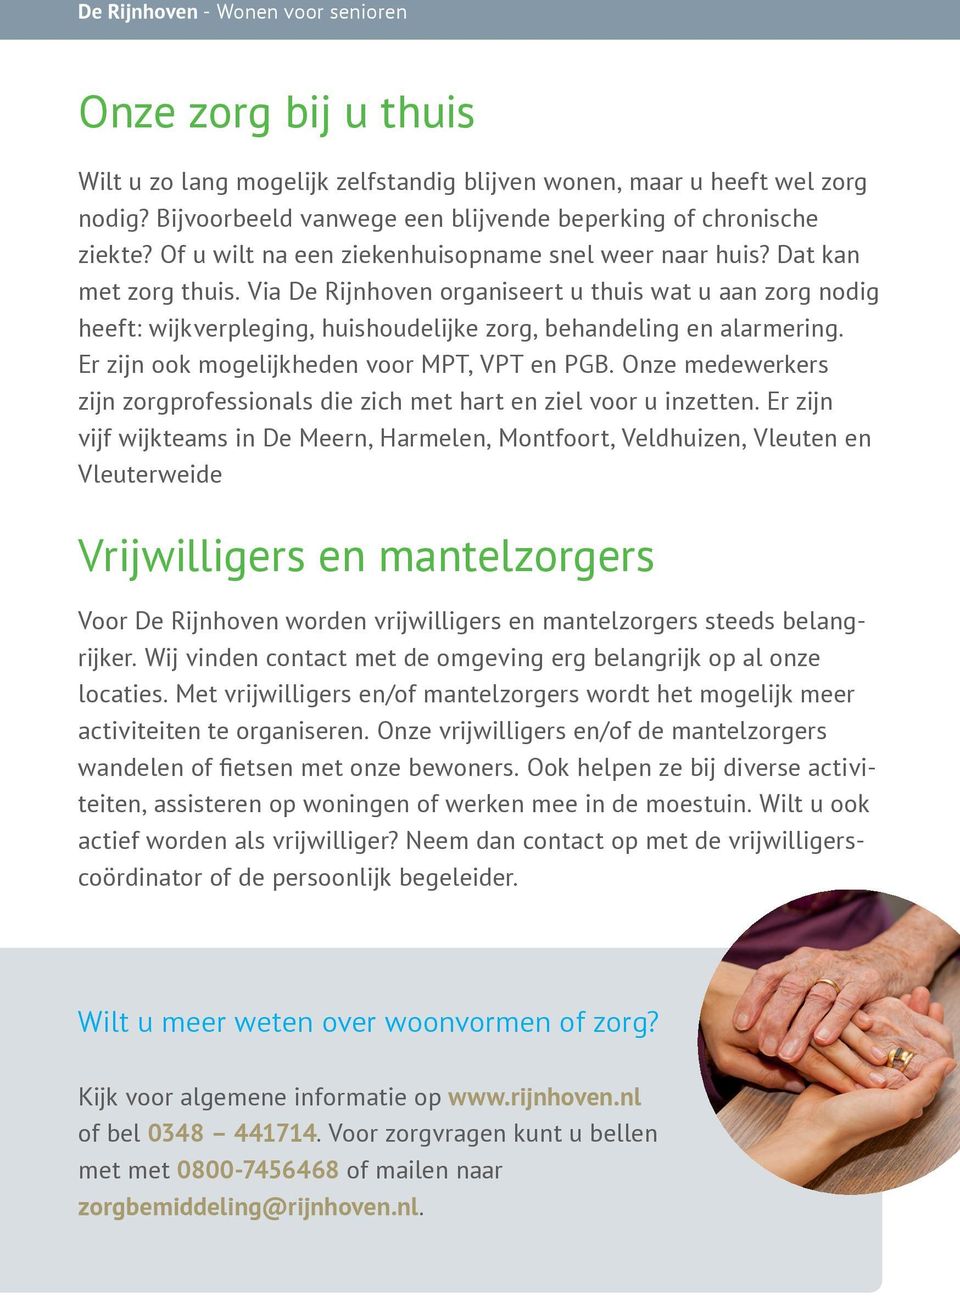 Via De Rijnhoven organiseert u thuis wat u aan zorg nodig heeft: wijkverpleging, huishoudelijke zorg, behandeling en alarmering. Er zijn ook mogelijkheden voor MPT, VPT en PGB.